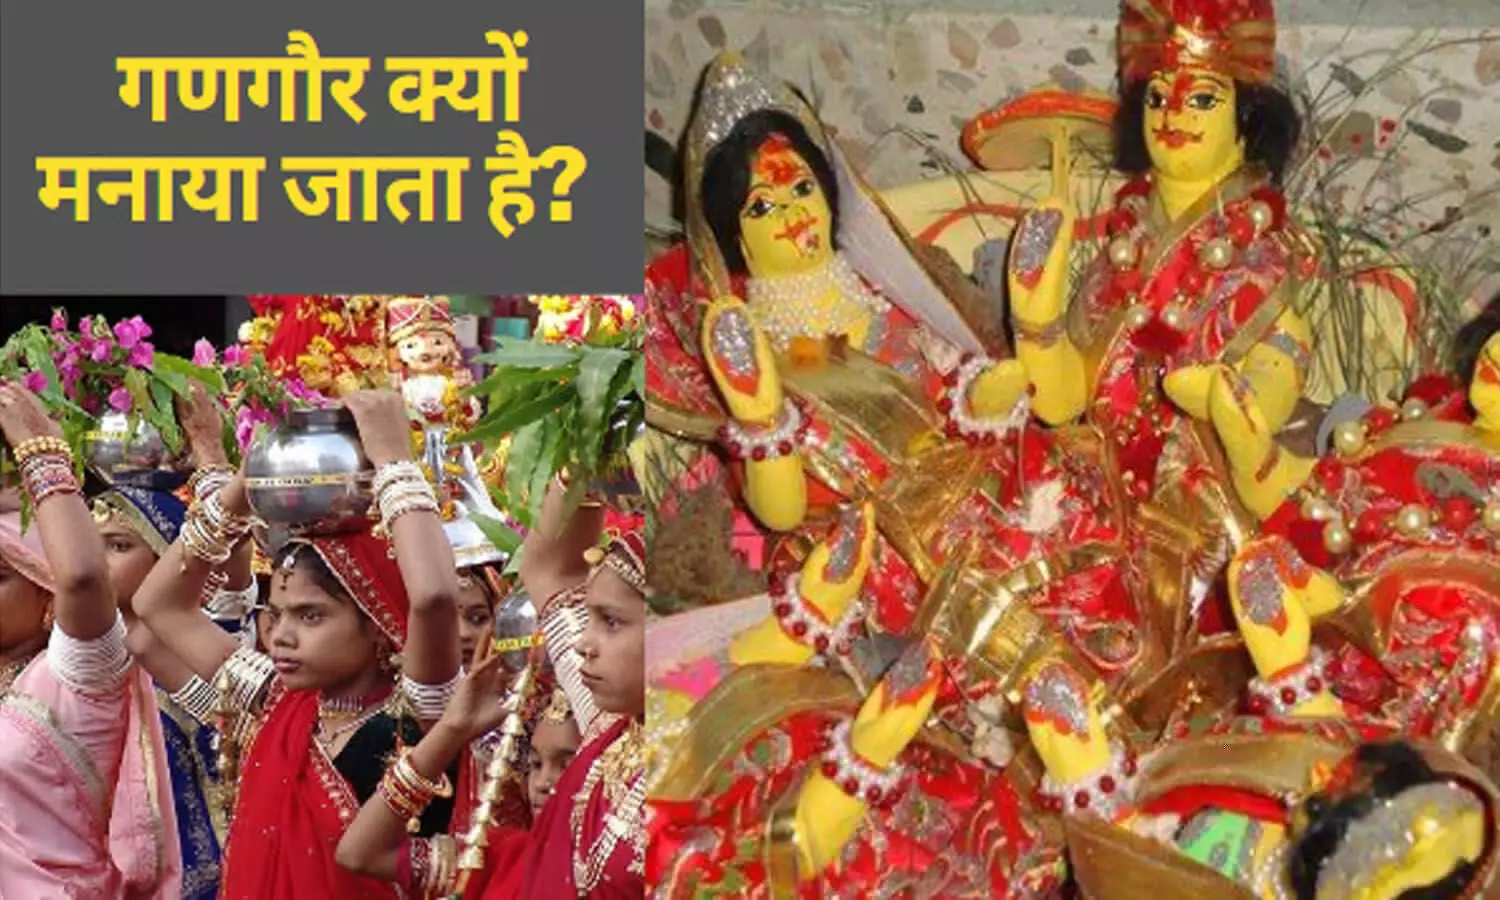 Gangaur Kyu Manaya Jata Hai गणगौर क्यों मनाया जाता है? जानिए कब है गणगौर पूजा का समय और  इससे जुड़ी कहानी